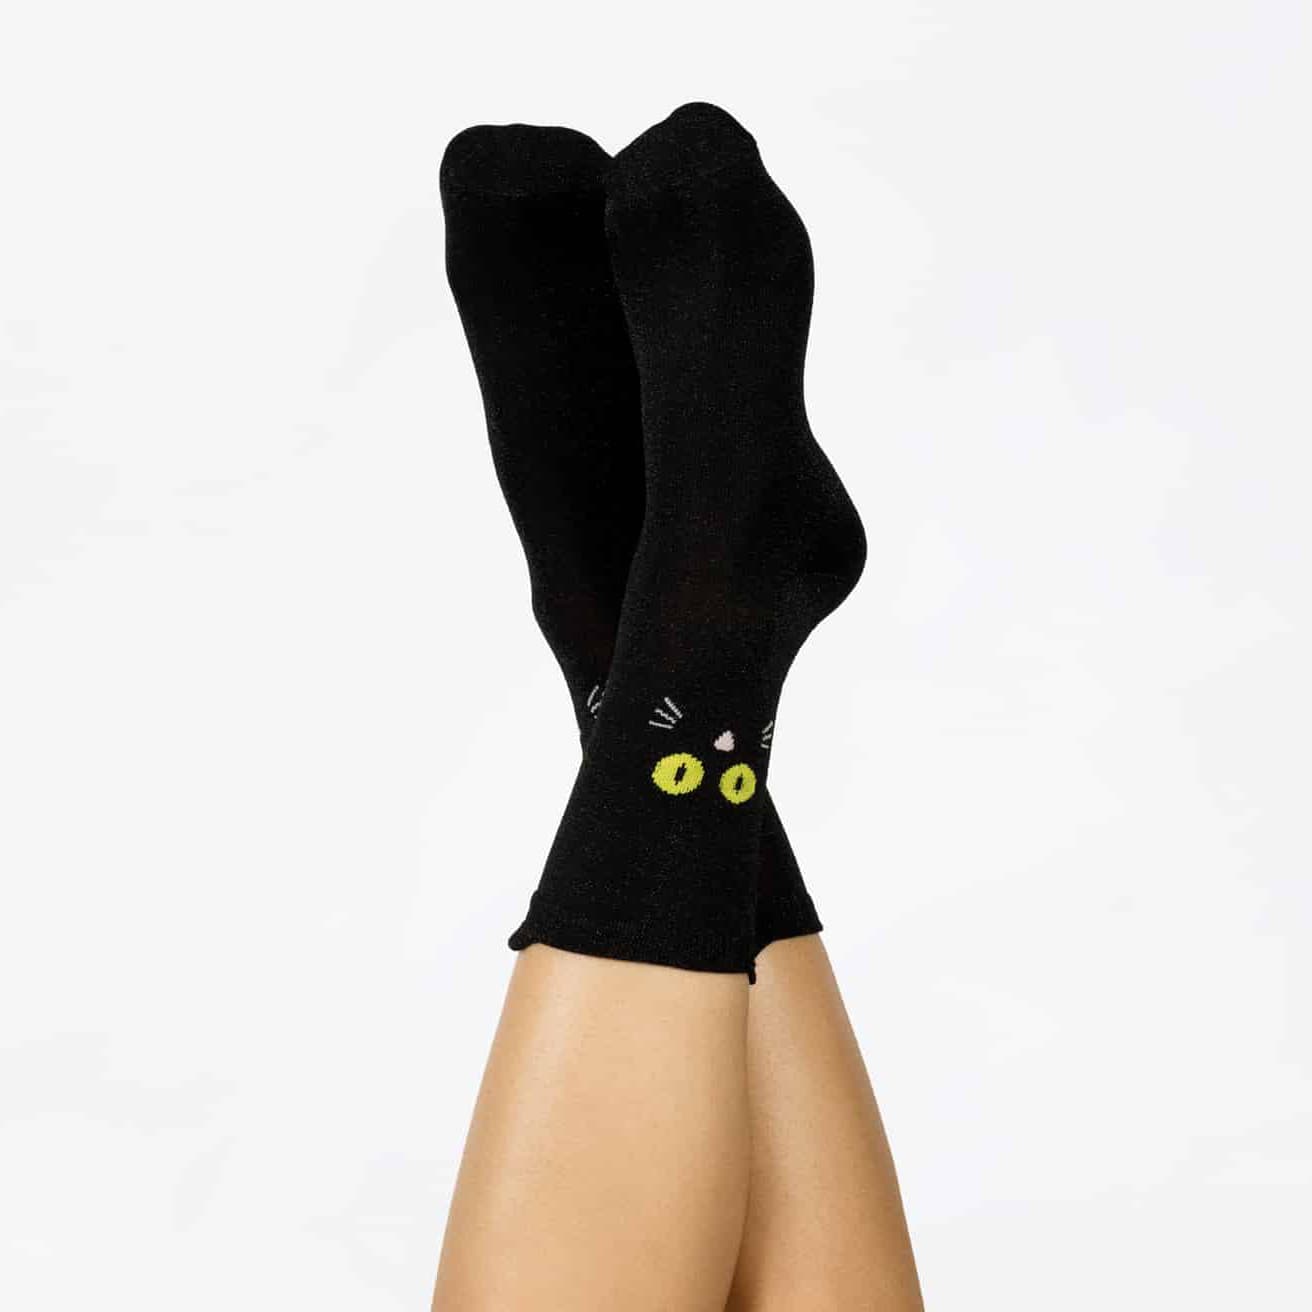 Marionnette chaussette chat noir de luxe, bouche mobile, cousue